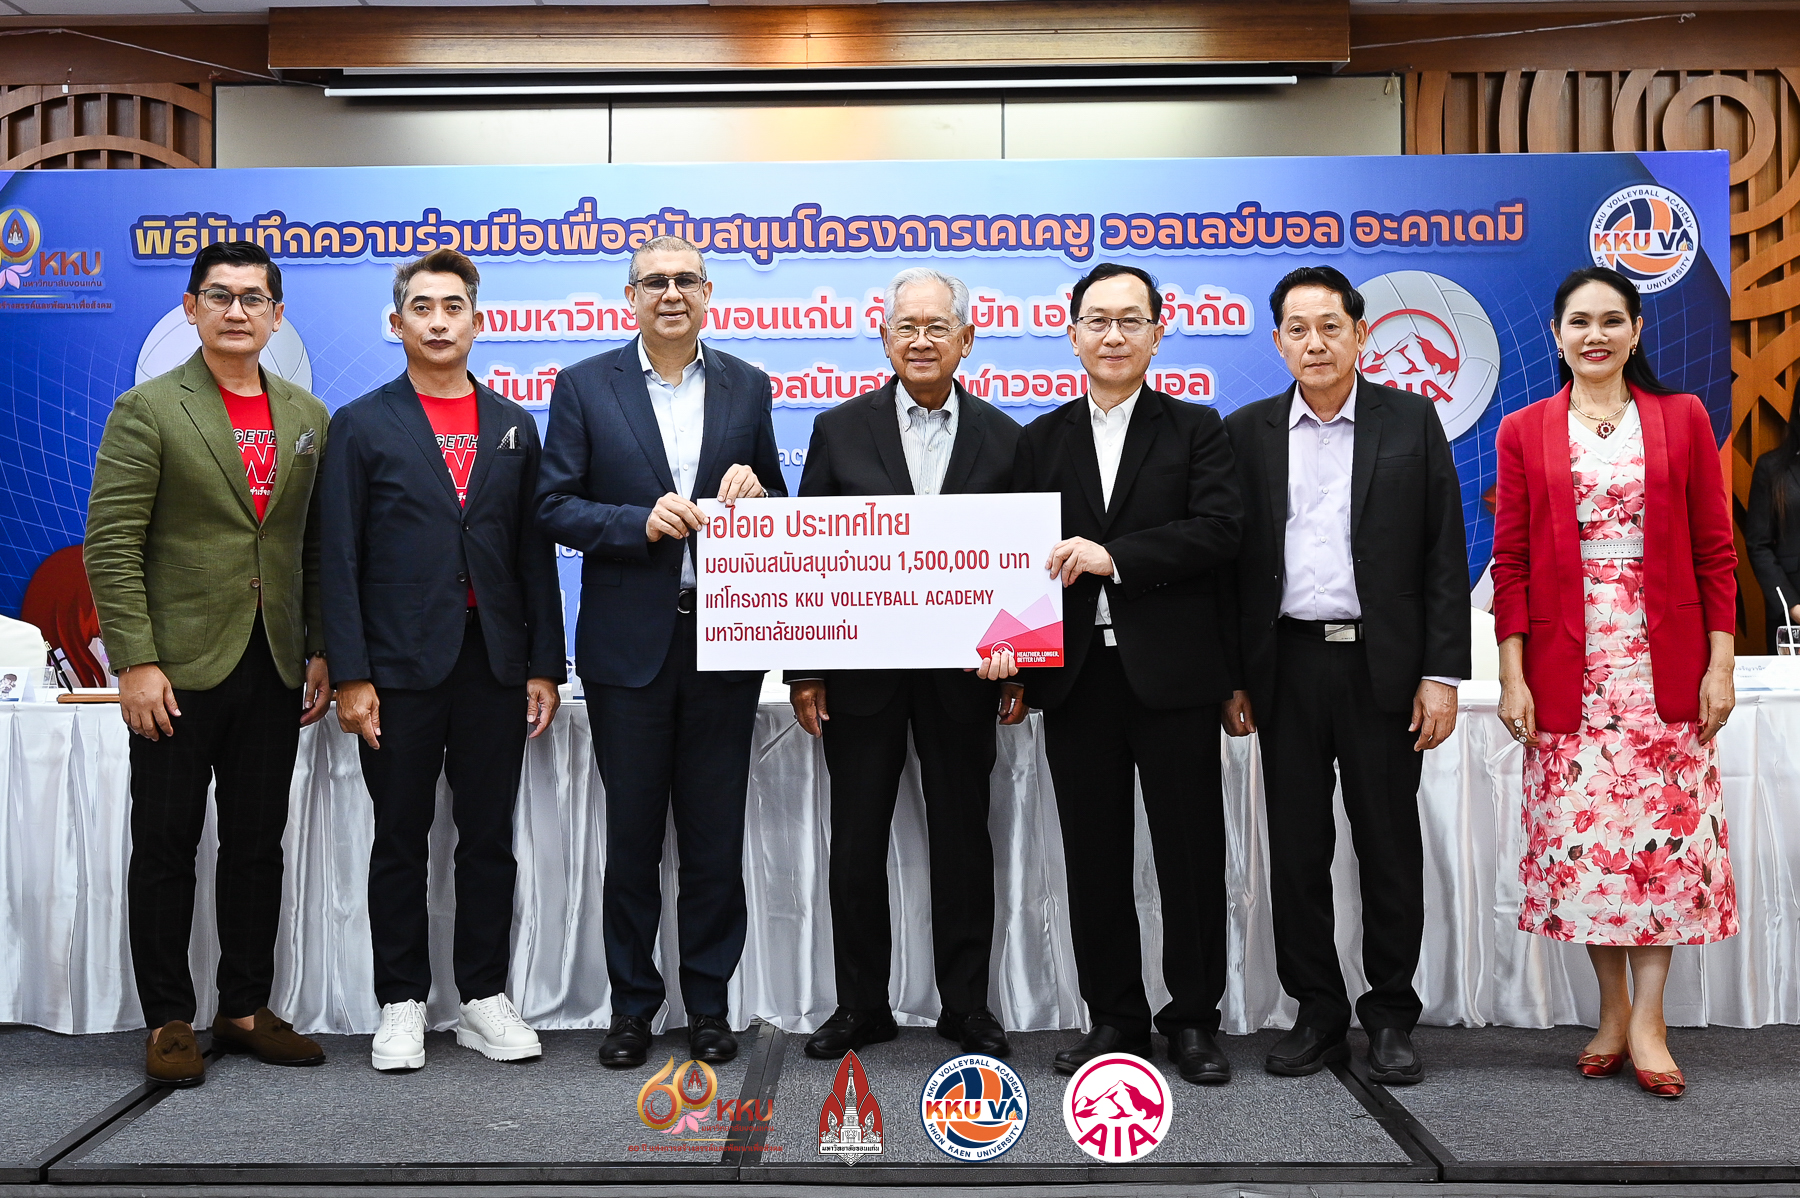 เอไอเอ ประเทศไทย มอบเงินสนับสนุน KKU Volleyball Academy จำนวน 1.5 ล้านบาท ต่อเนื่องเป็นปีที่ 2 สำนักพิมพ์แม่บ้าน